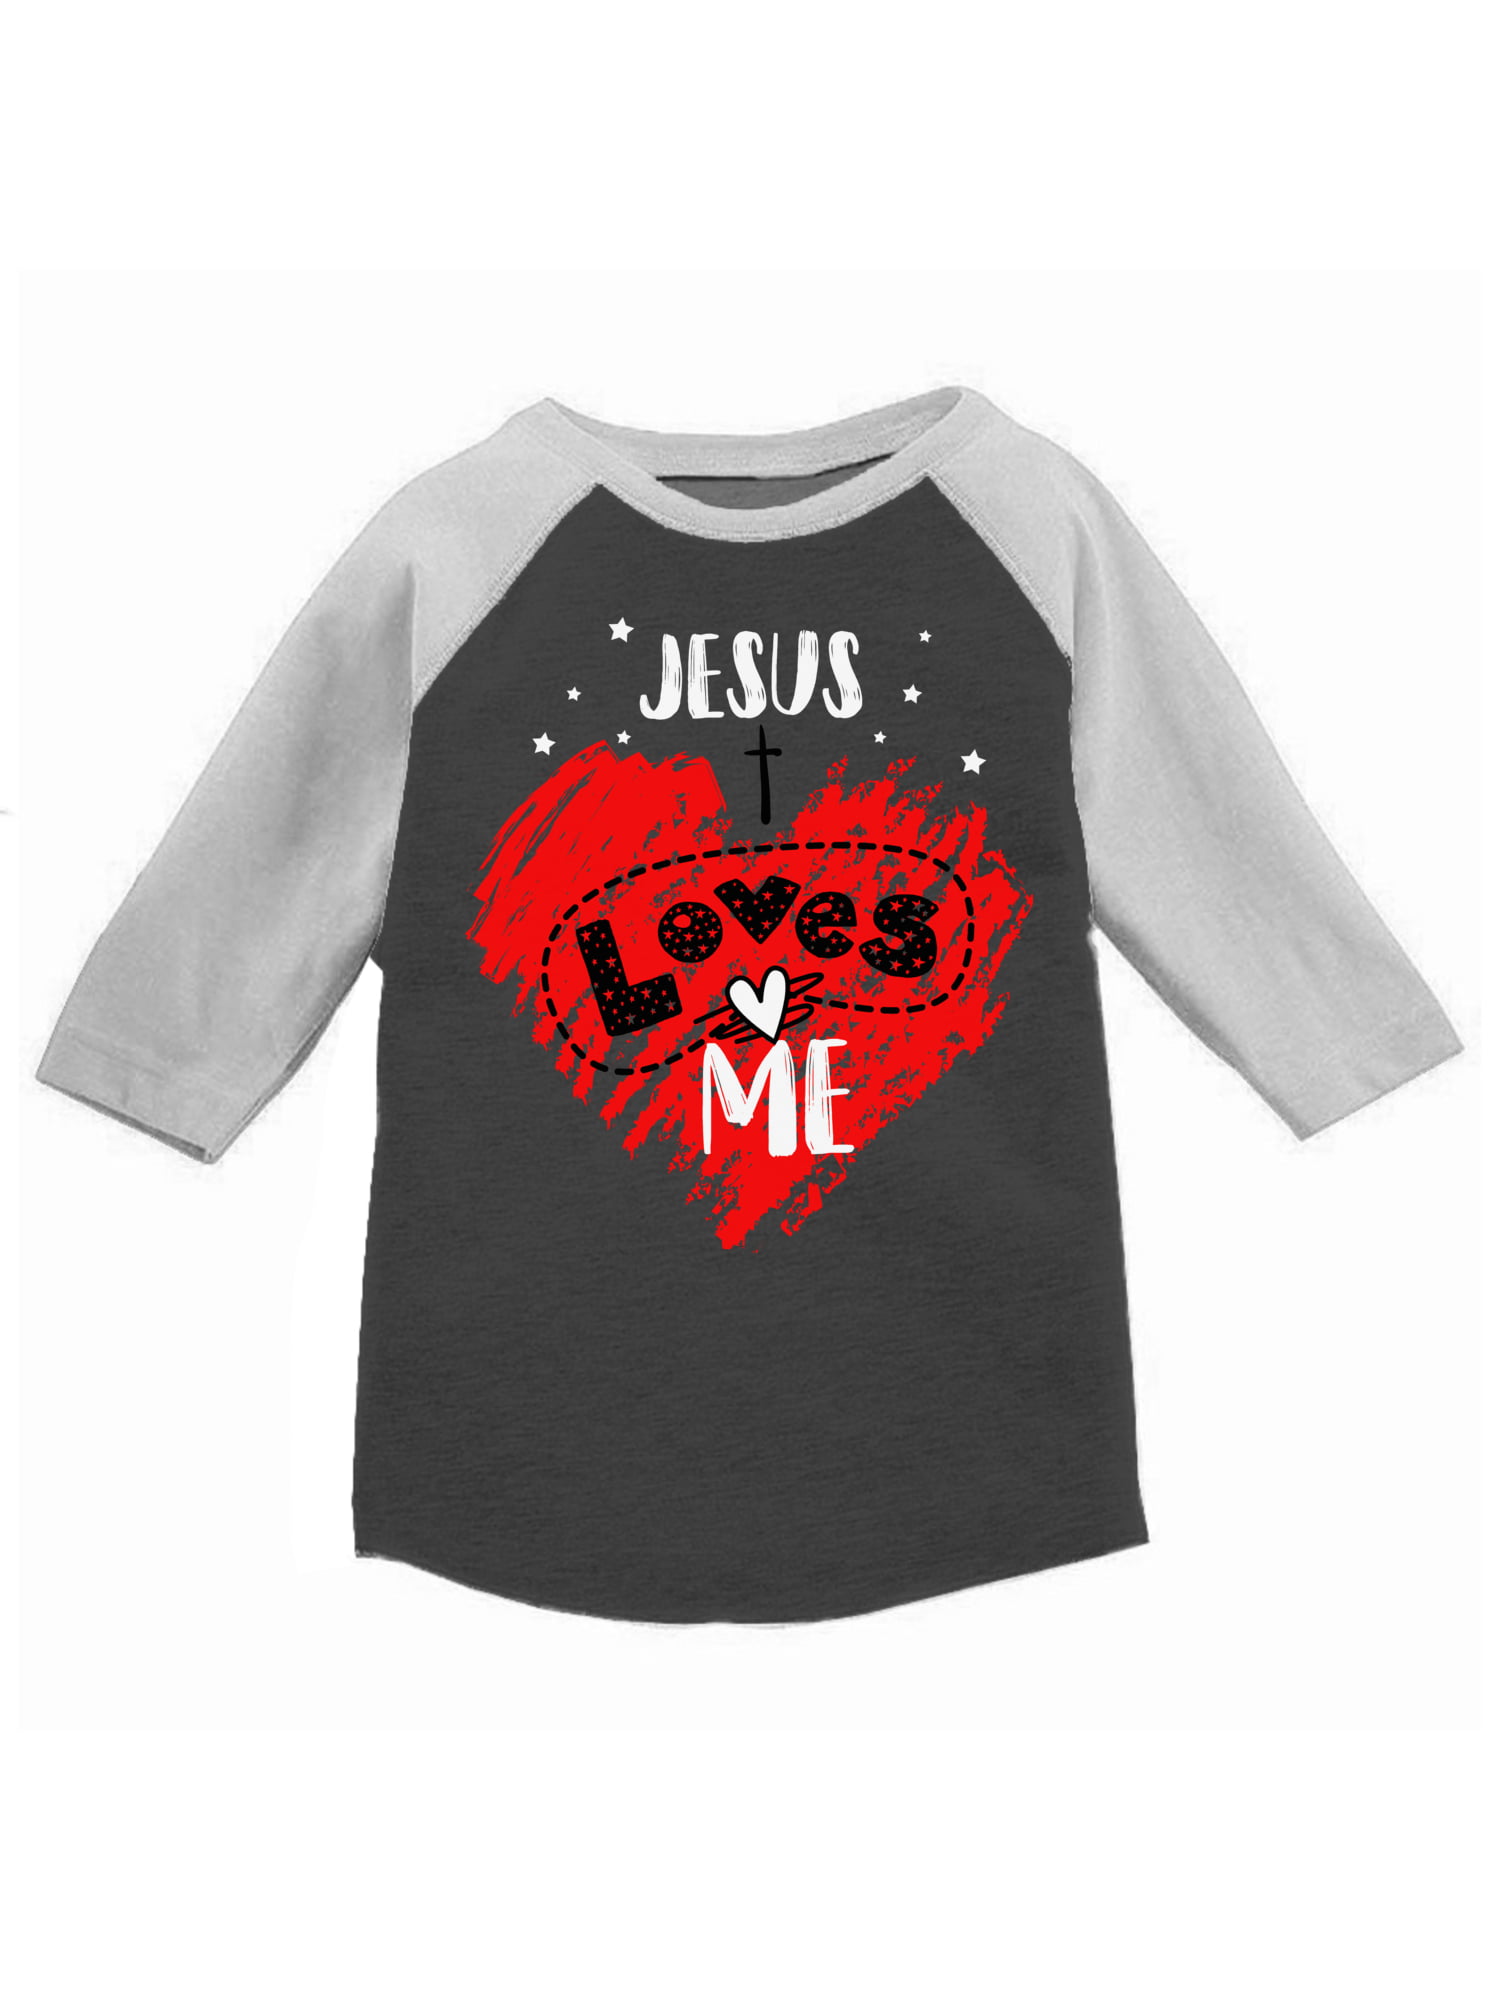 Toddler/Kids Raglan T-Shirt My Mimi in Massachusetts Loves Me 